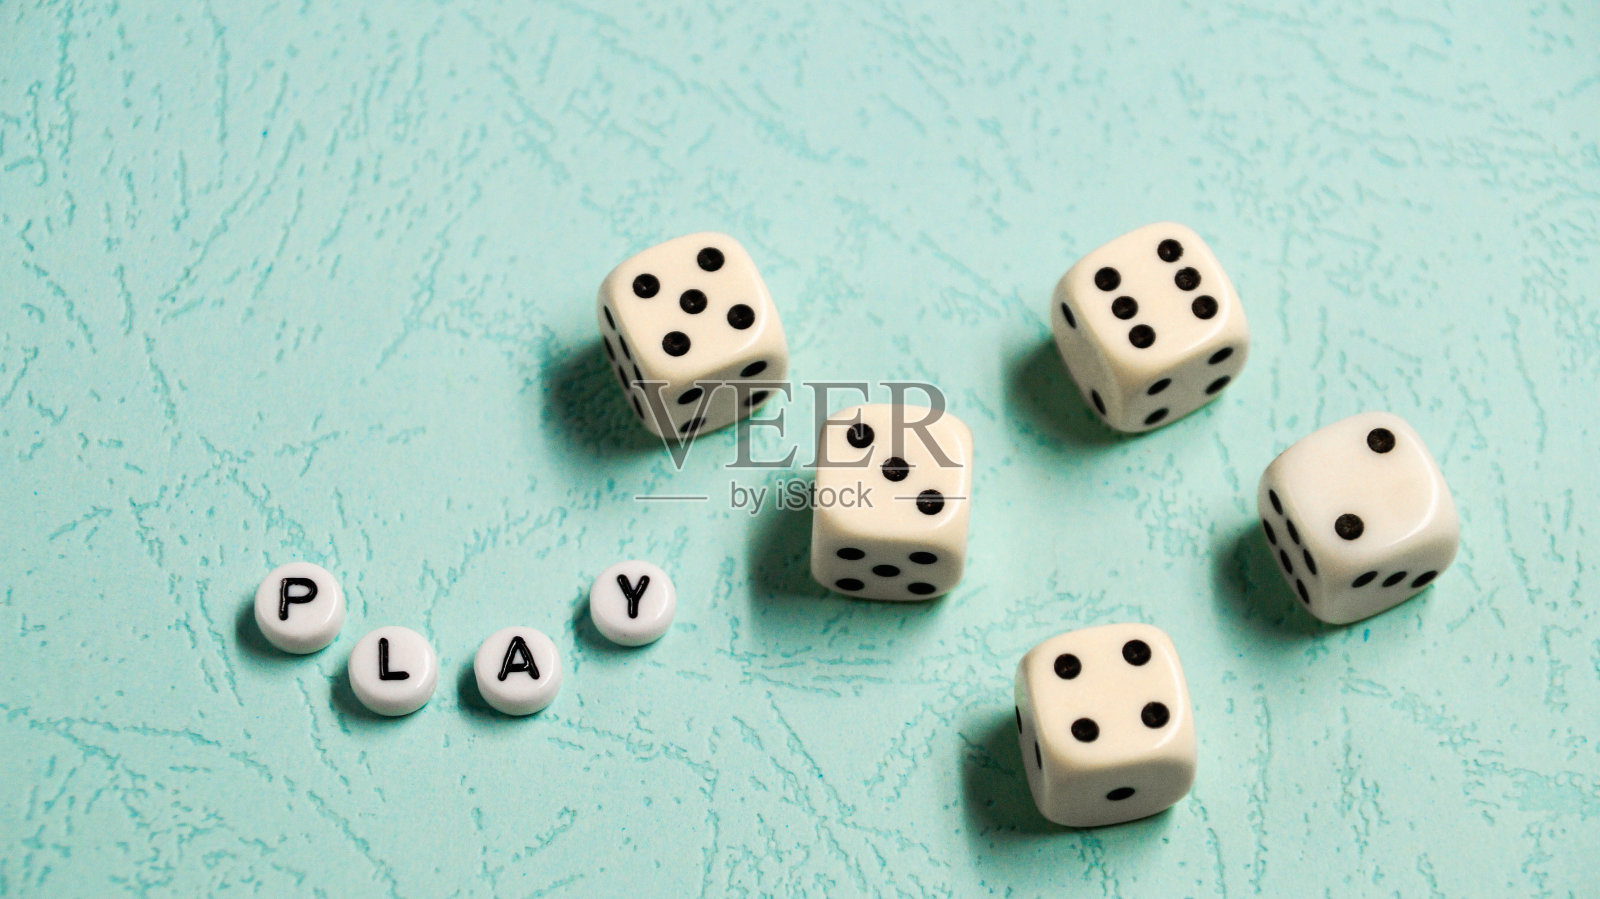 单词“Play”是由彩色的木制字母和游戏骰子组成的背景。照片摄影图片